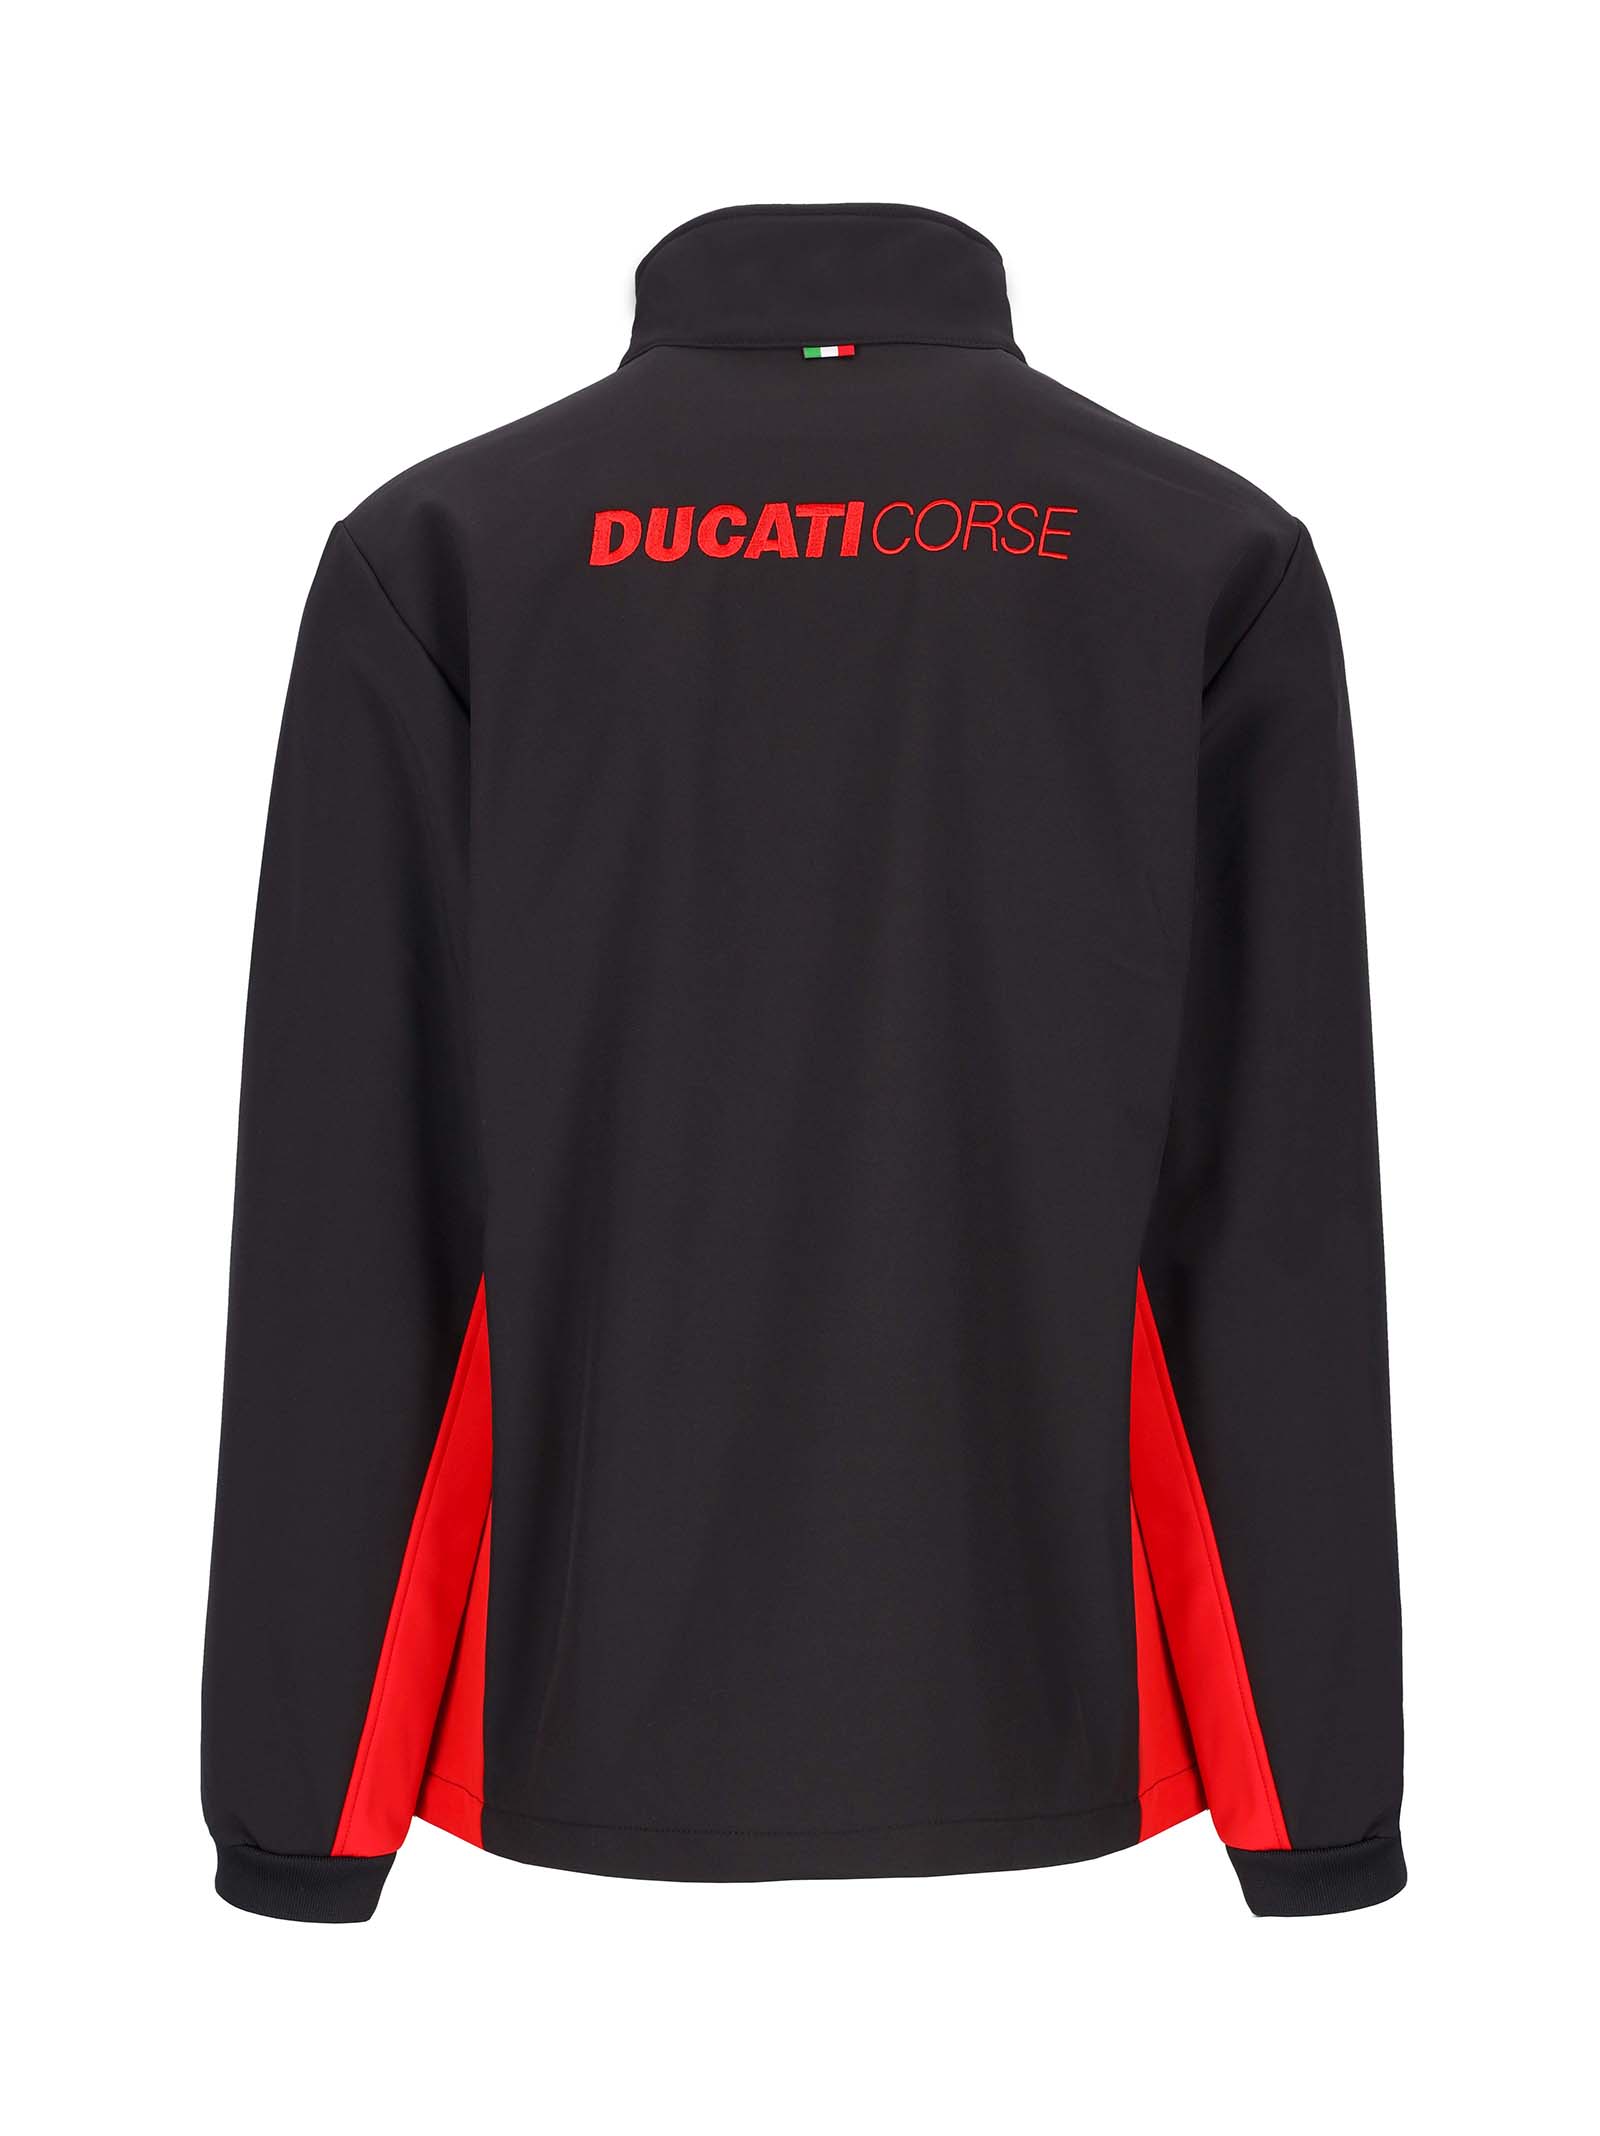 Veste softshell Ducati Corse noir avec insert rouge vue dos